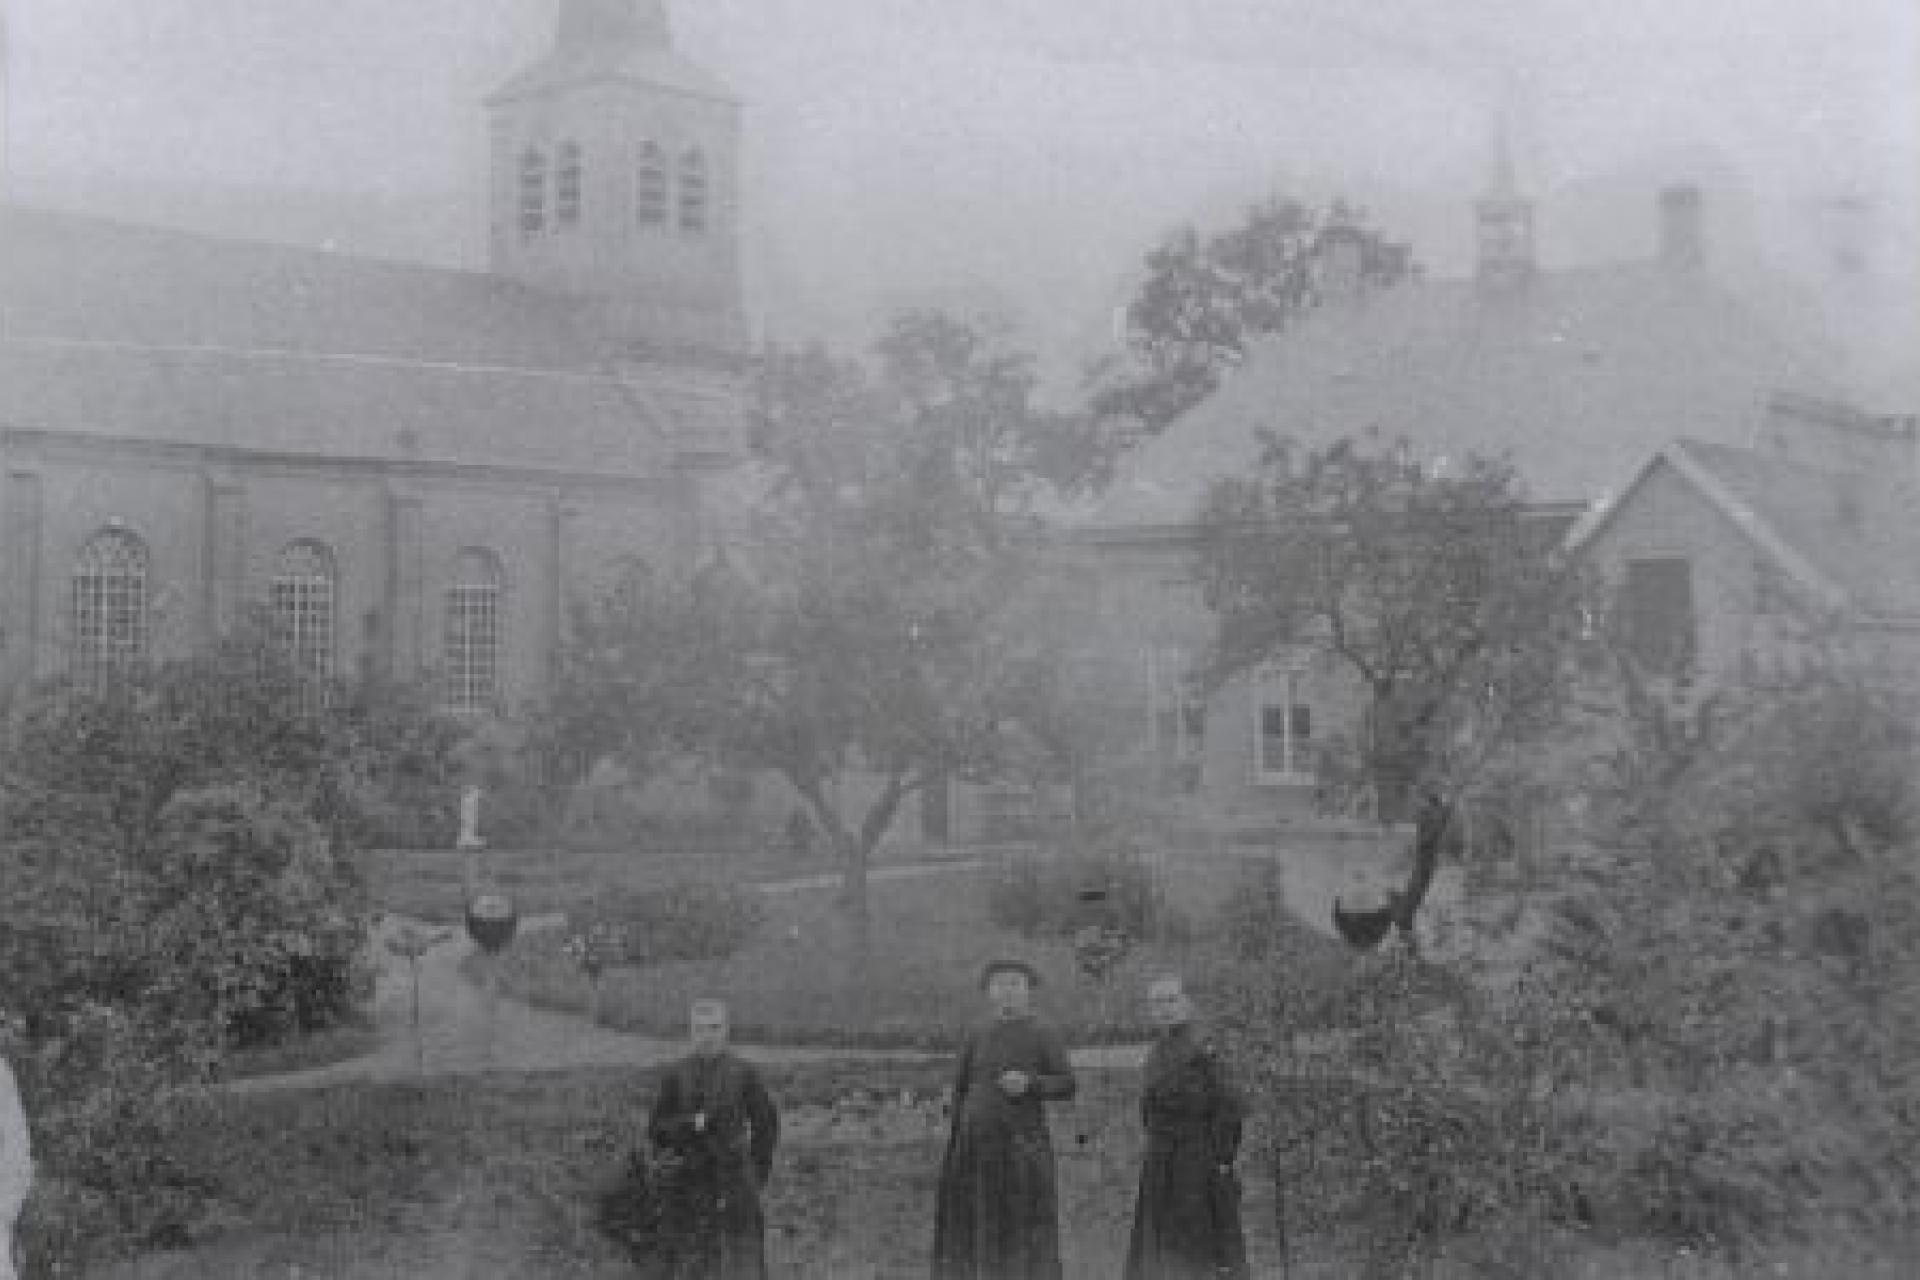 oude foto van De Mortel met daarop 3 mannen met op de achtergrond een tuin en een kerk